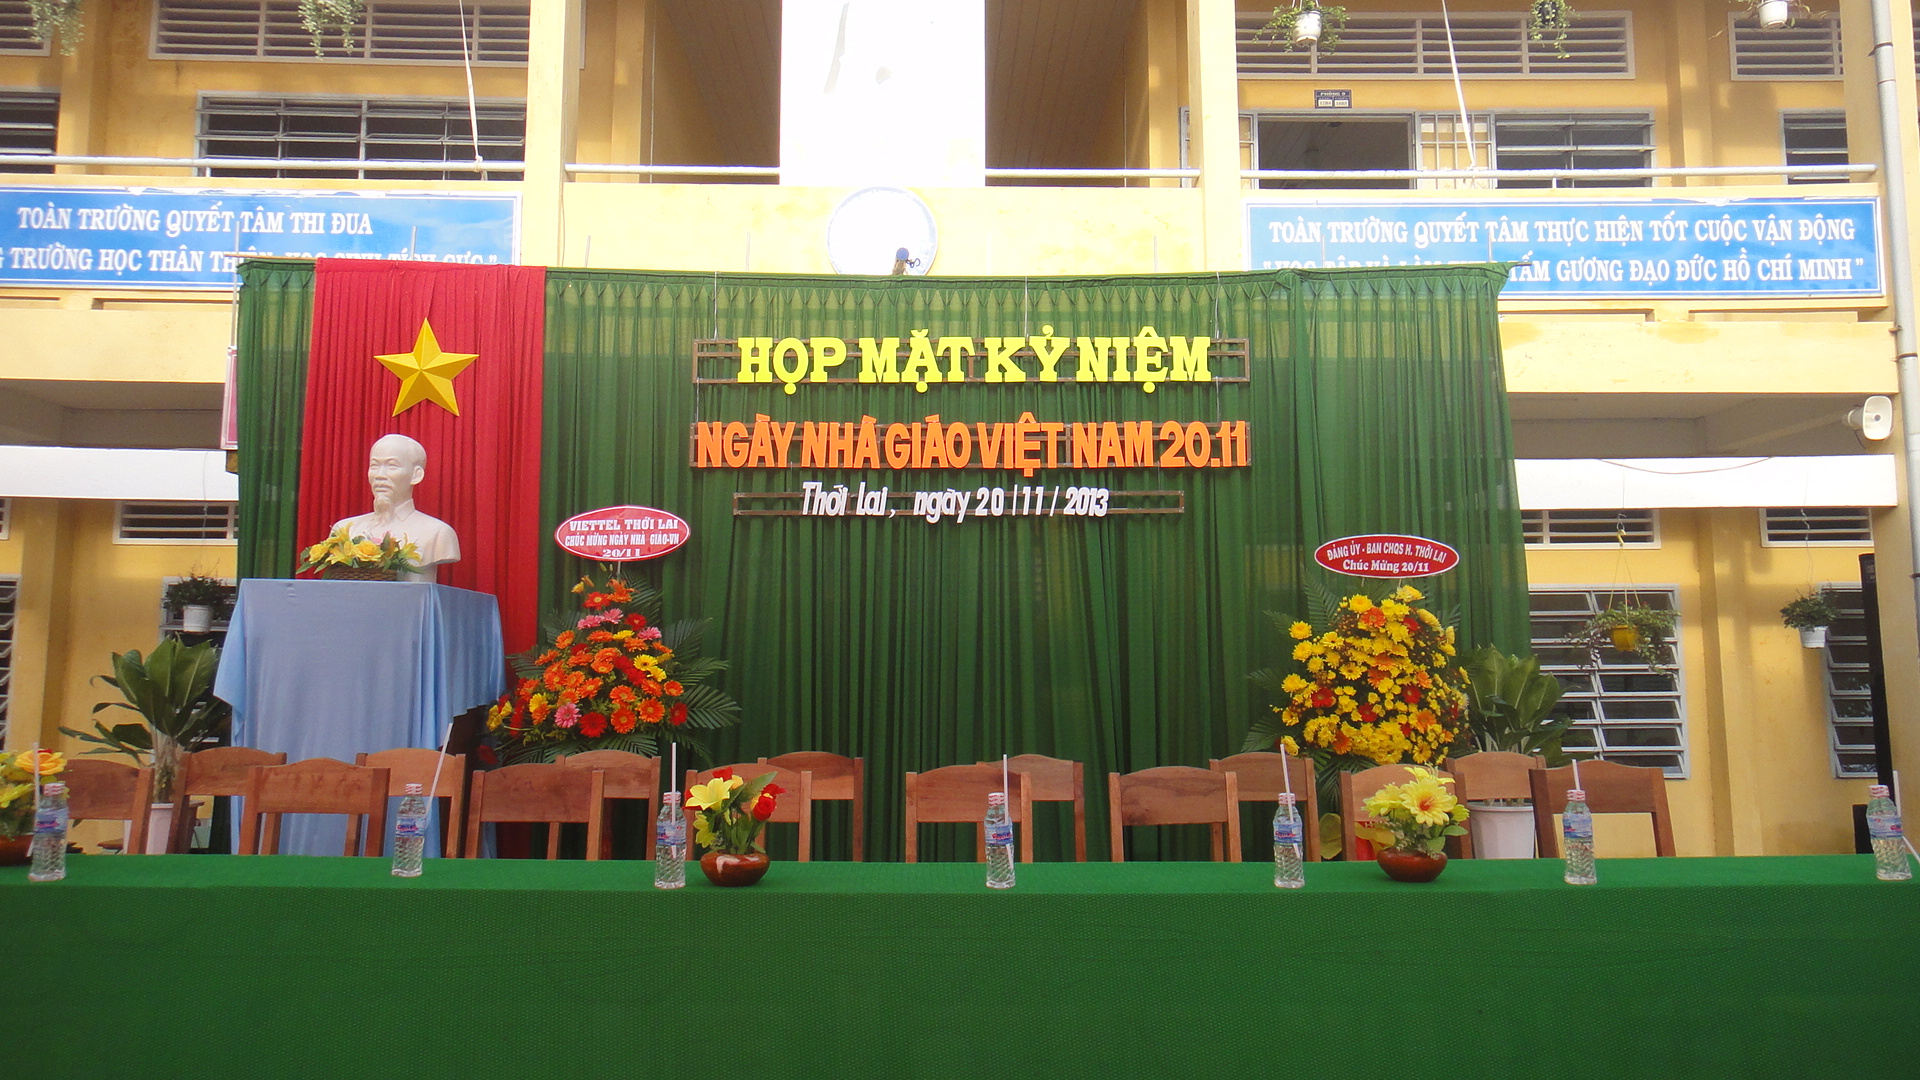 Họp mặt kỷ niệm ngày Nhà giáo Việt Nam 20-11